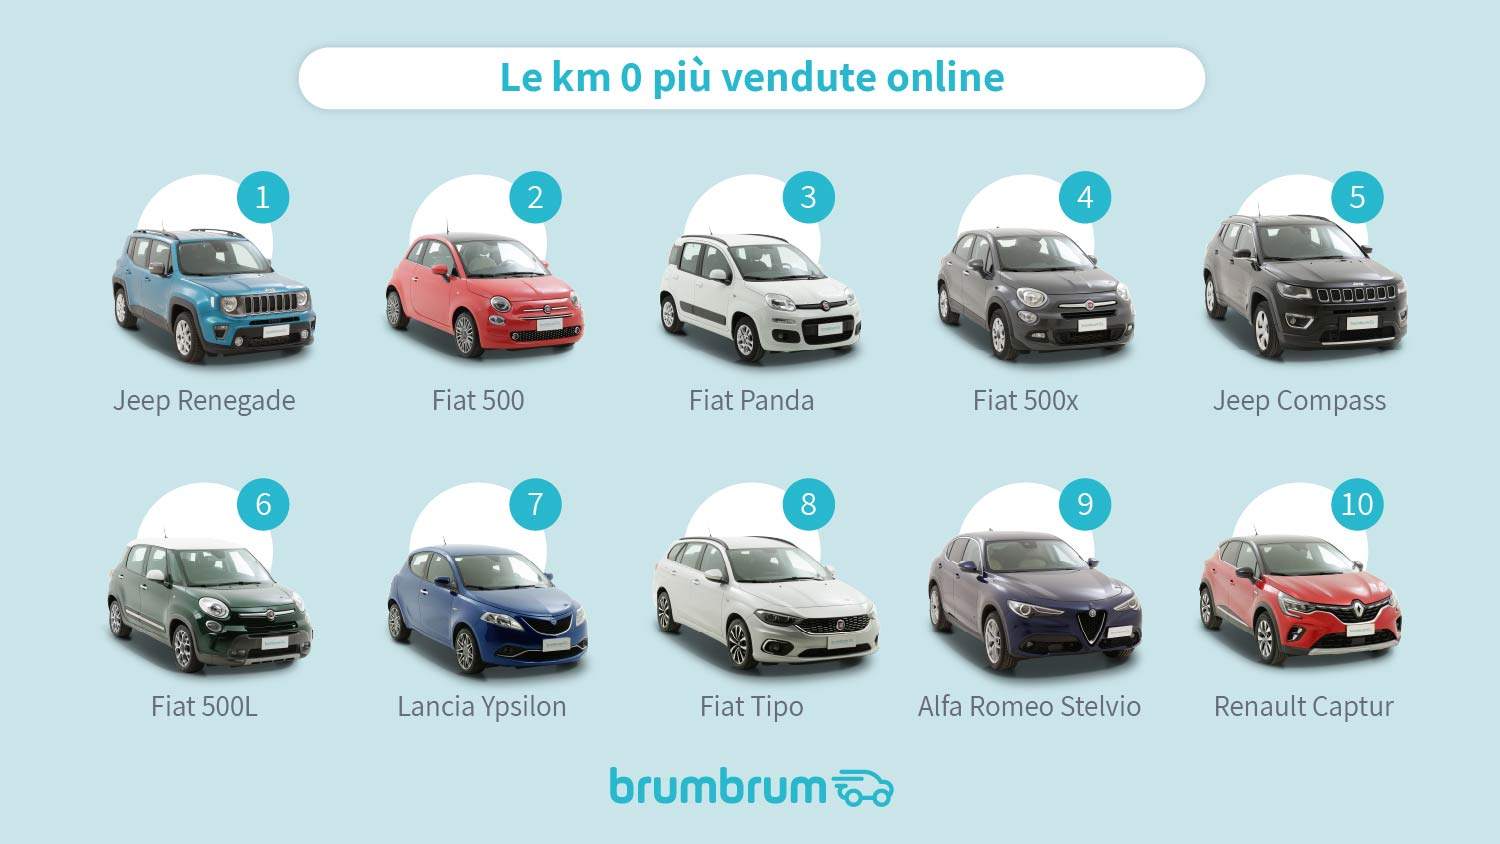 brumbrum - Classifica auto a km 0 più vendute online